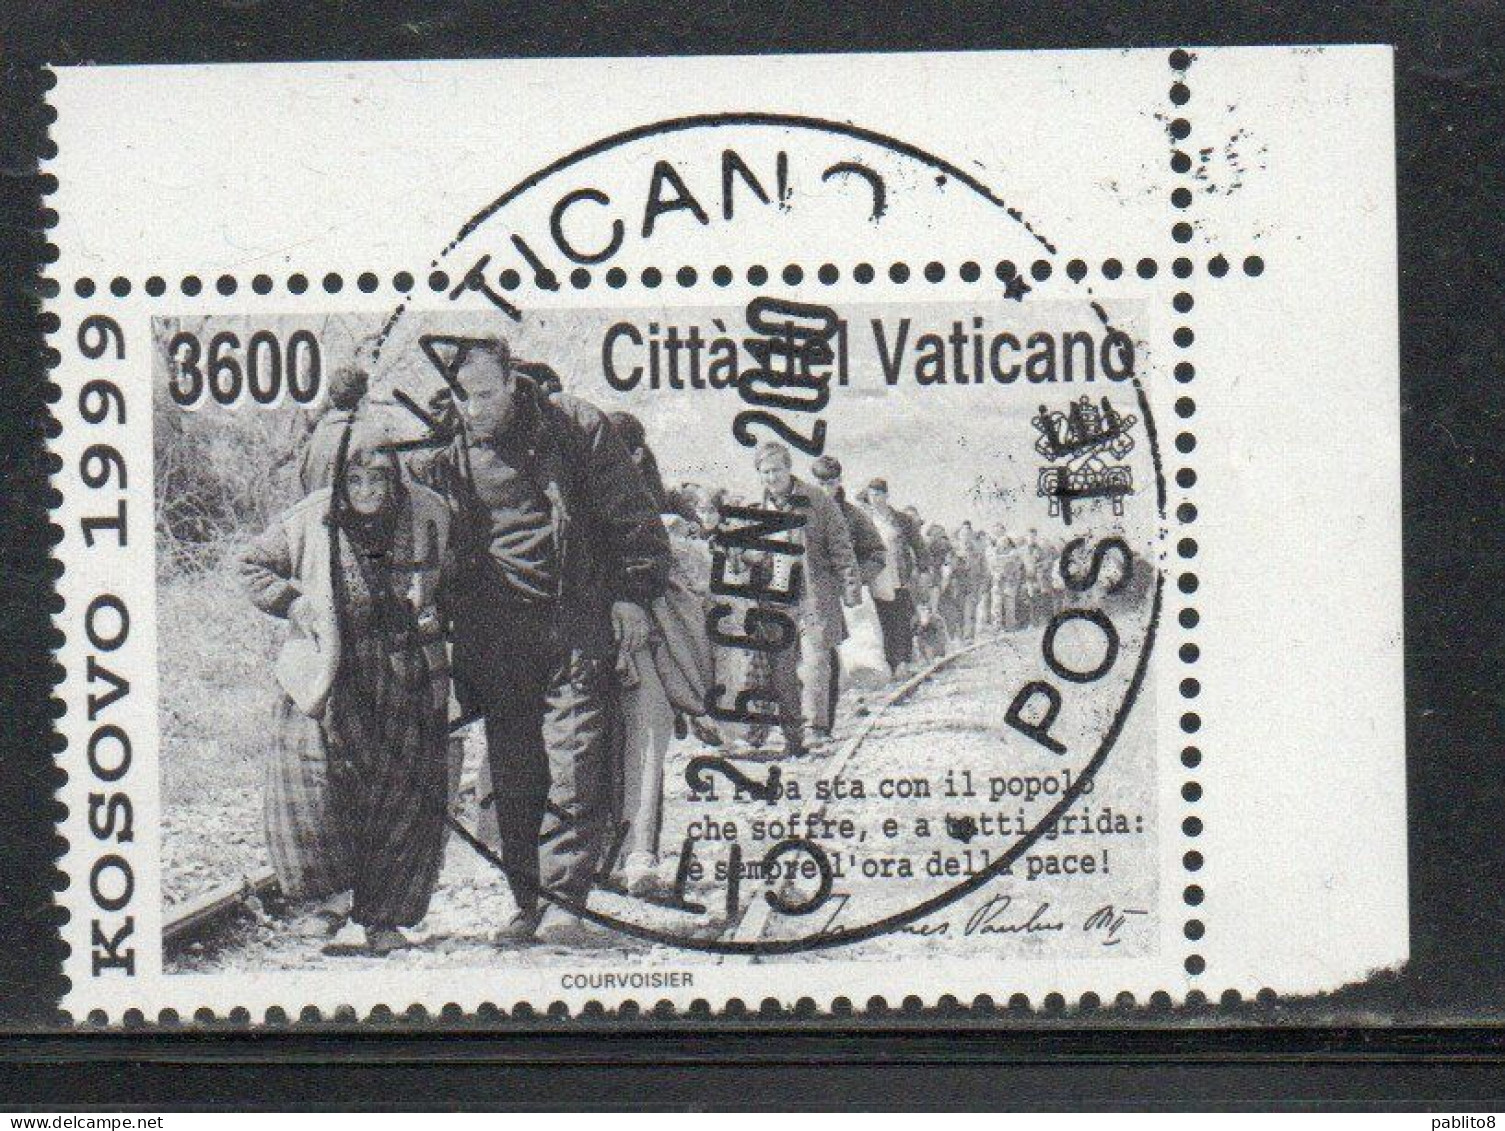 CITTÀ DEL VATICANO VATIKAN VATICAN 1999 KOSOVO LIRE 3600 USATO USED OBLITERE' - Used Stamps